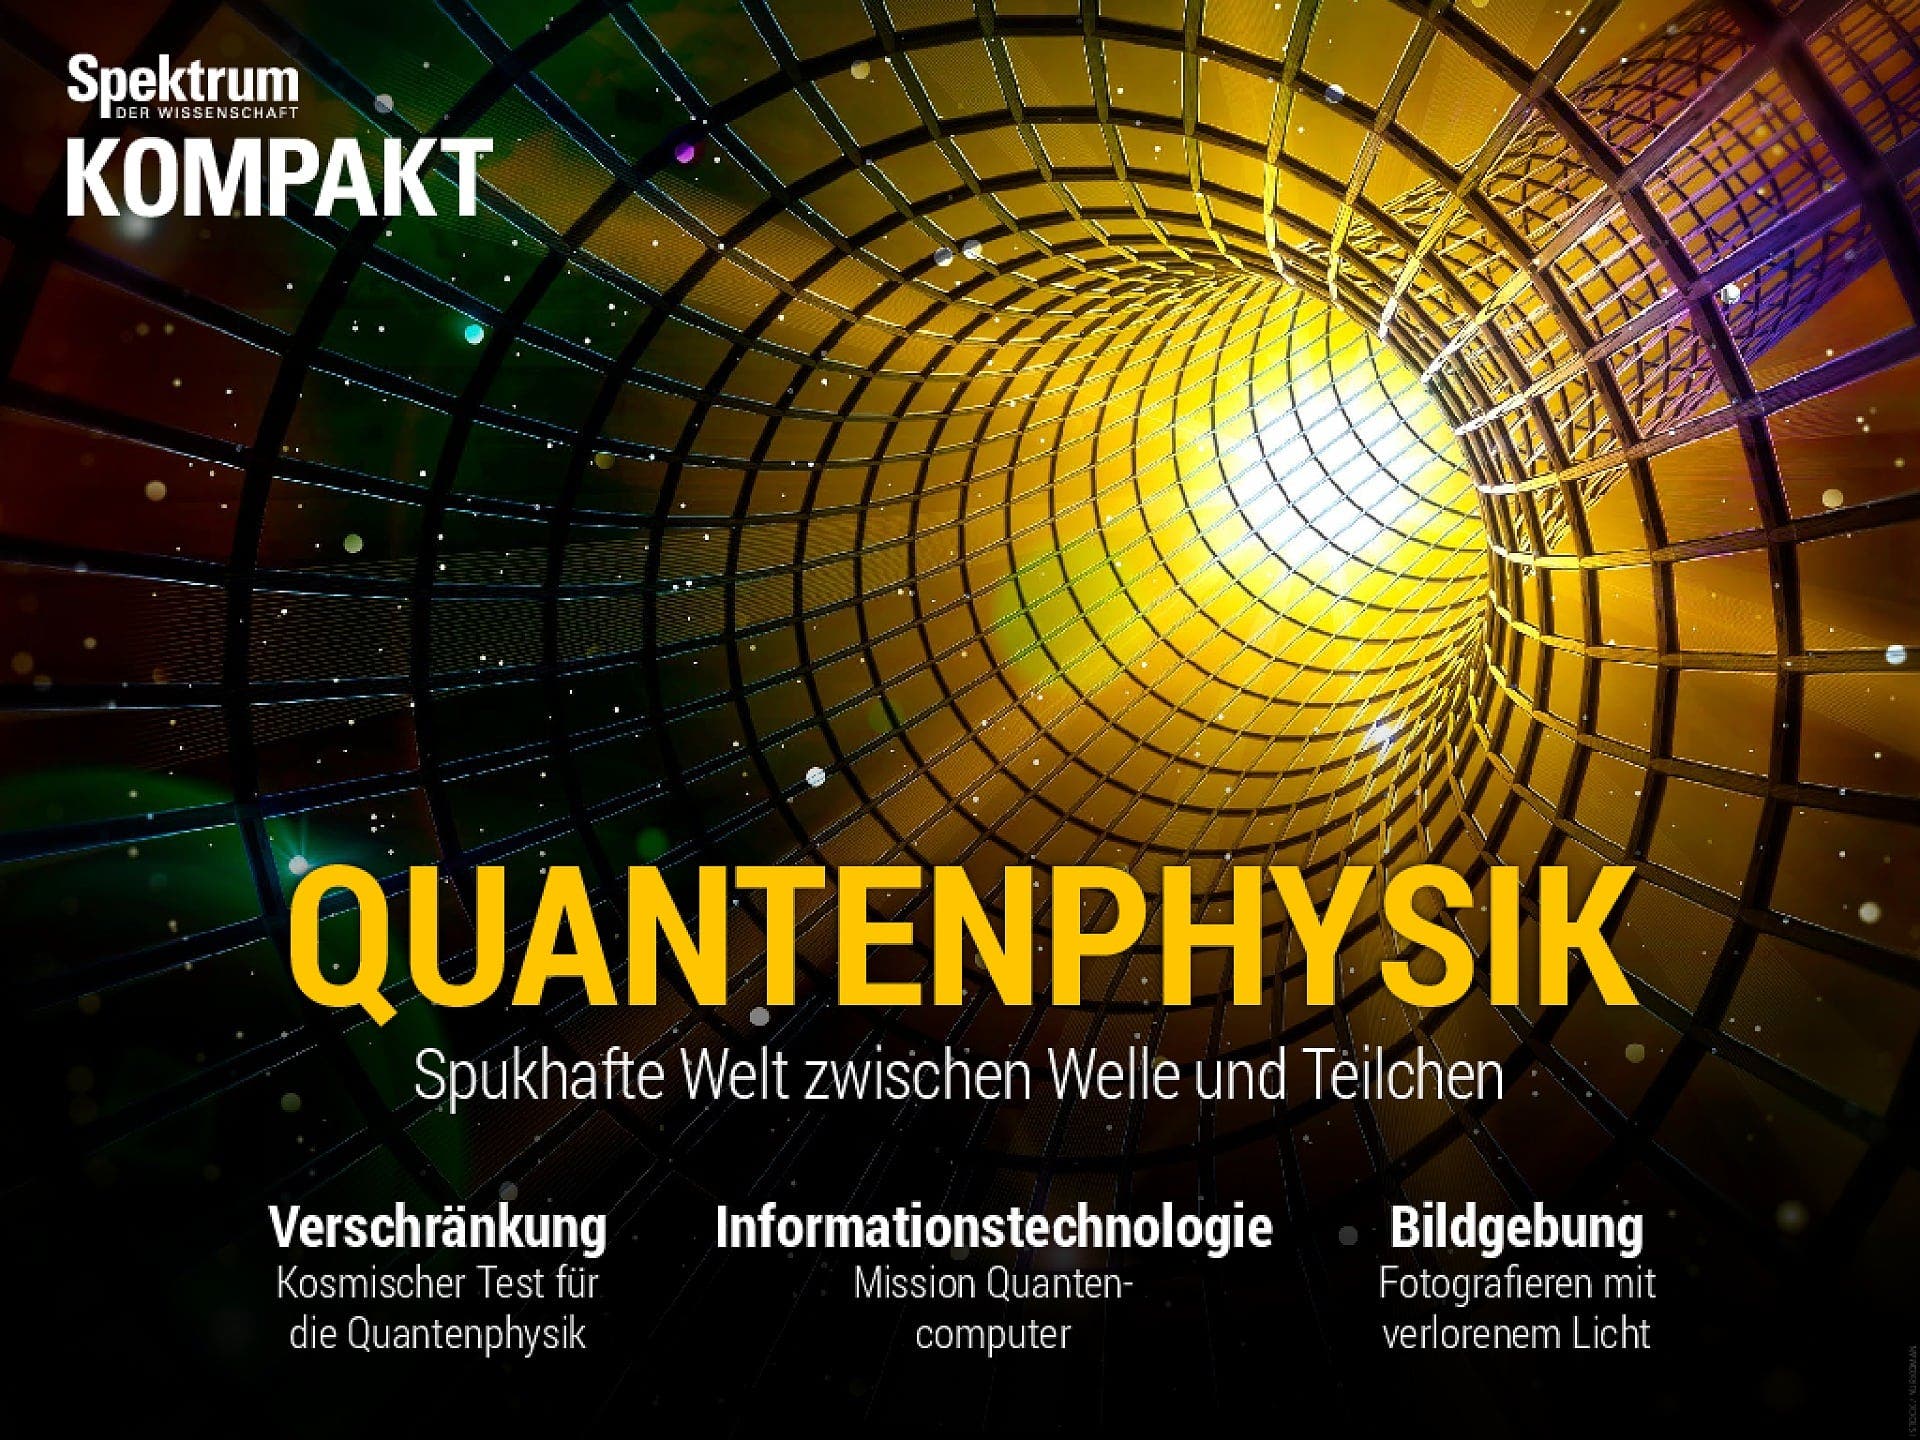 Quantenphysik - Spukhafte Welt zwischen Welle und Teilchen